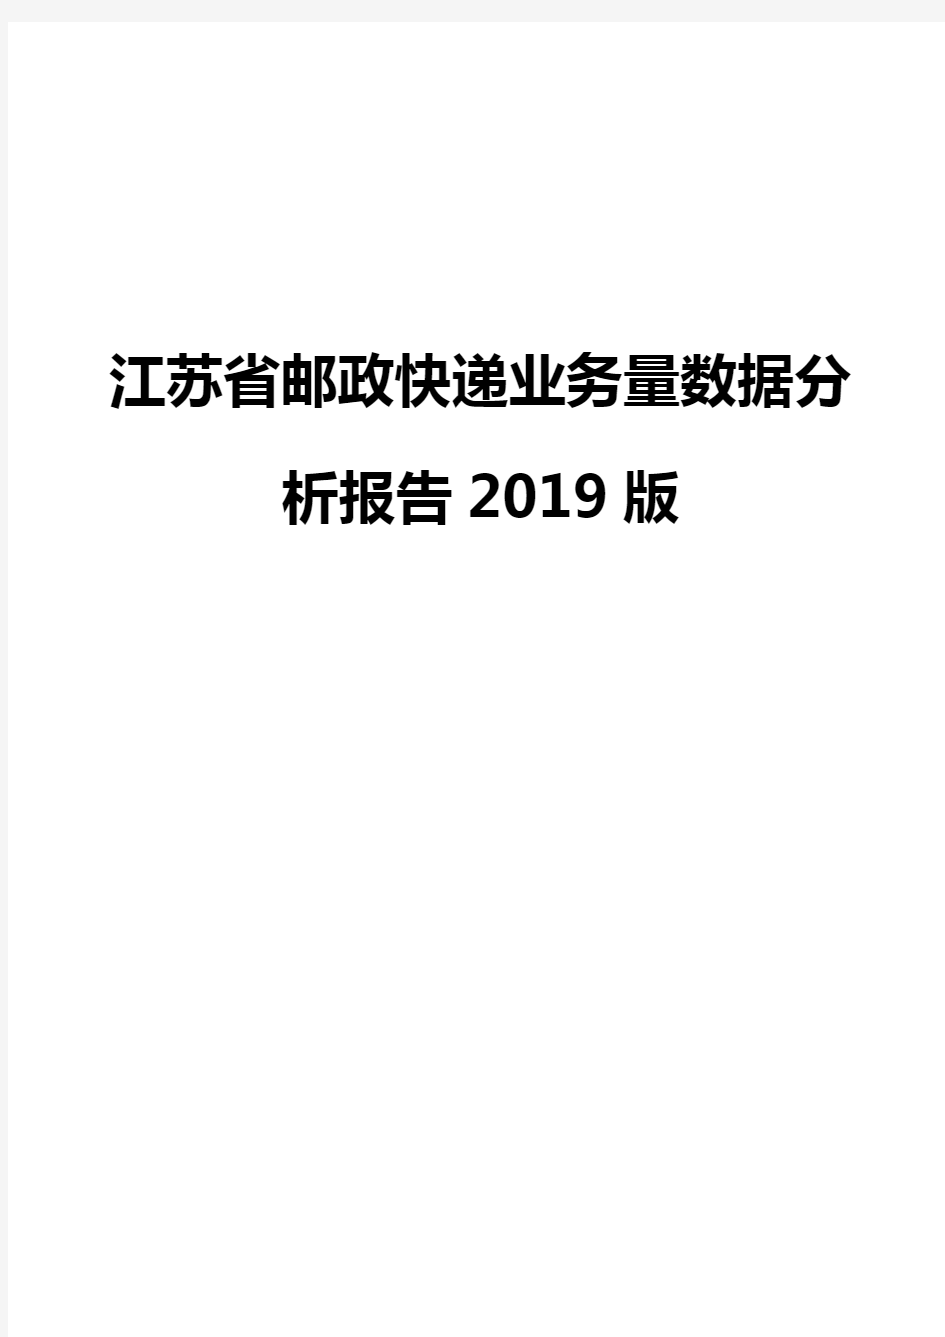 江苏省邮政快递业务量数据分析报告2019版